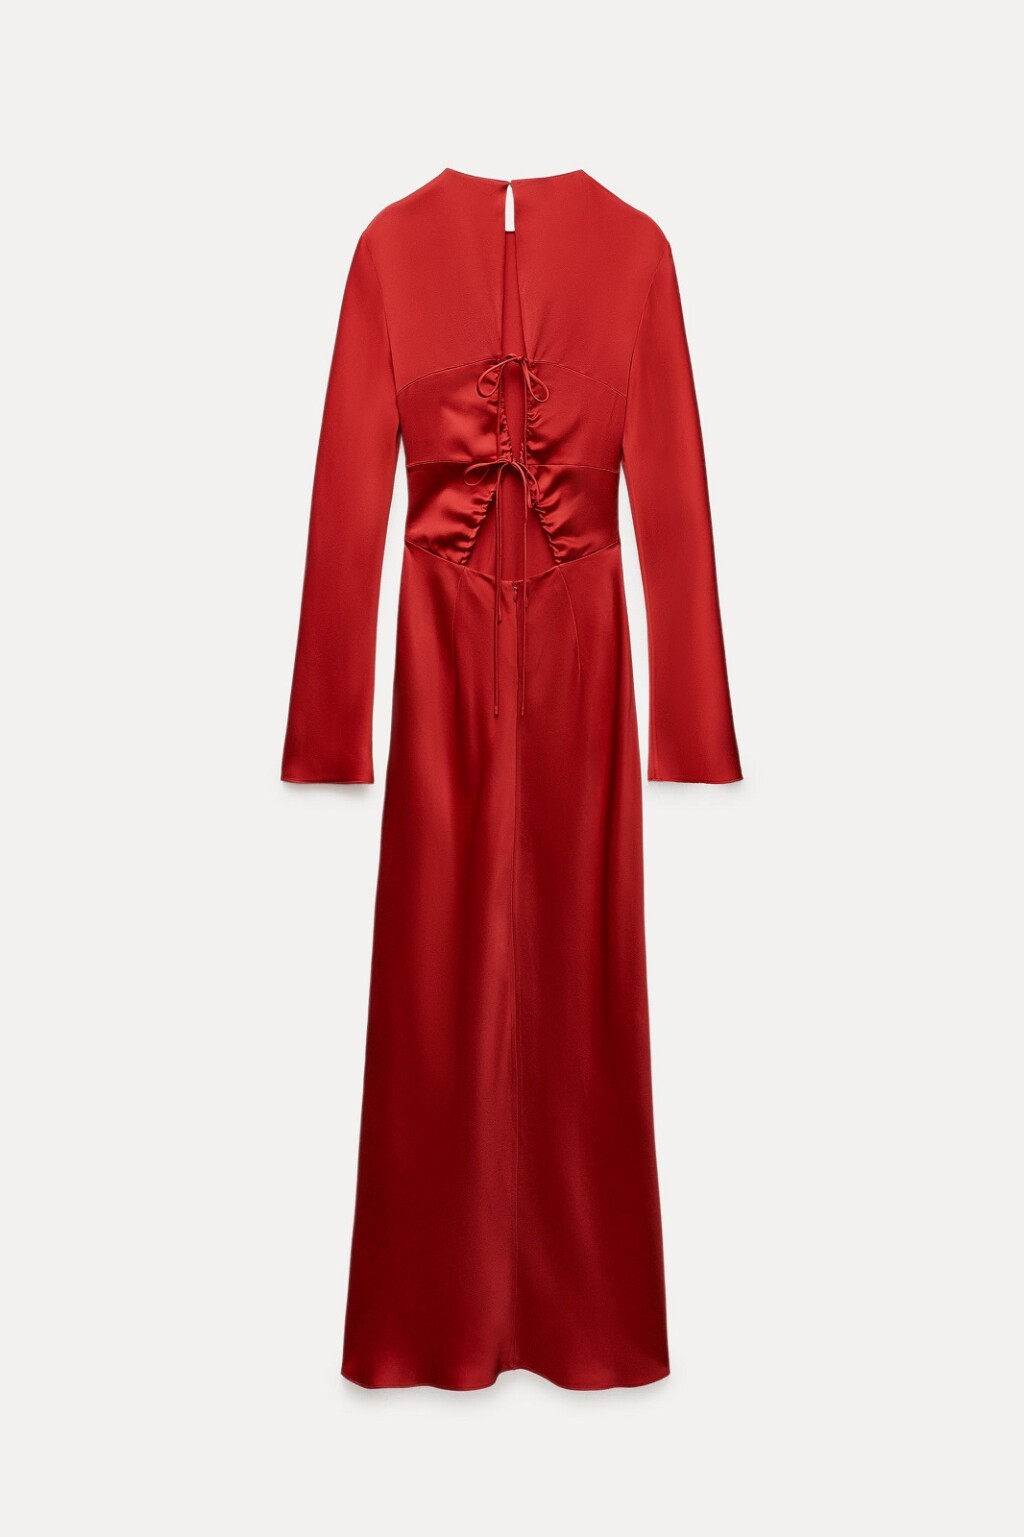 Zara crvena haljina s vezanjem na leđima, 79,95 eura - 1